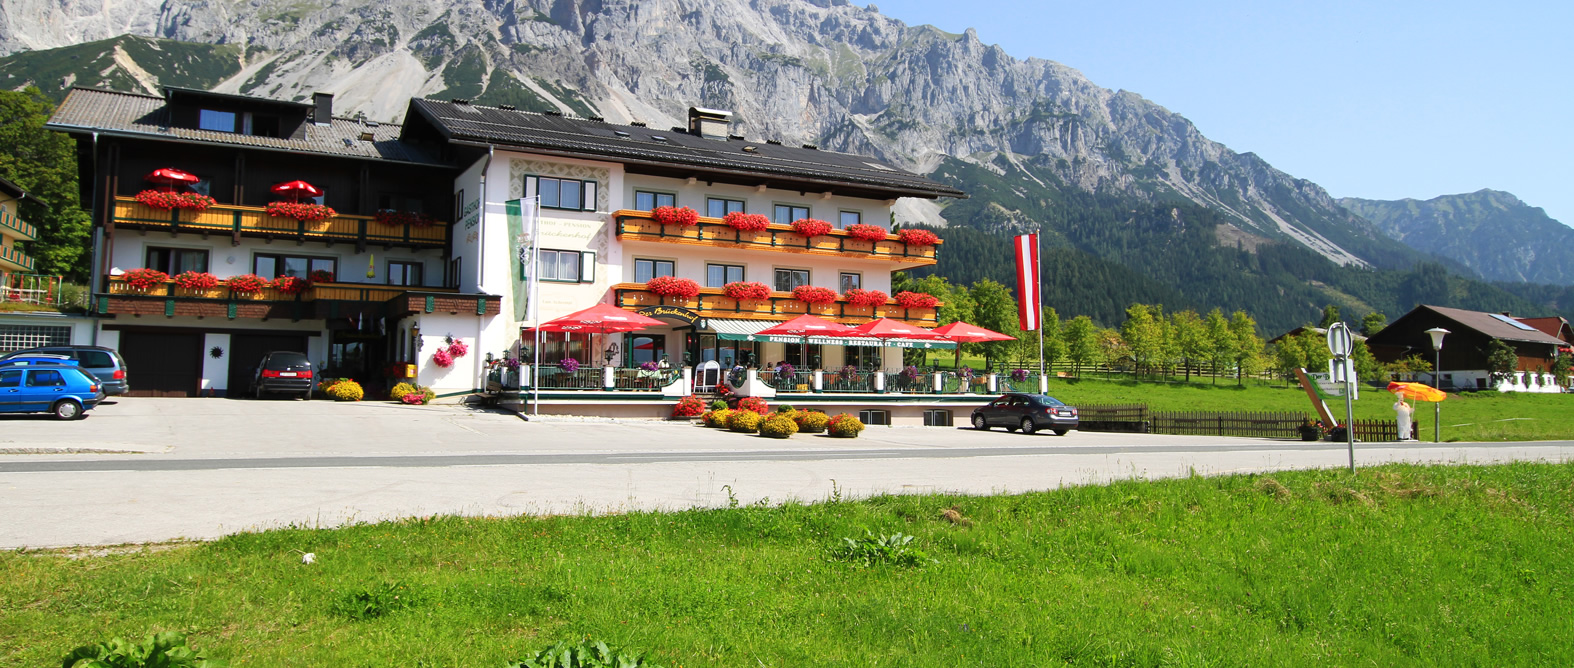 Sommerurlaub im Hotel und Gasthof Brückenhof in Ramsau am Dachstein in der Steiermark in Österreich